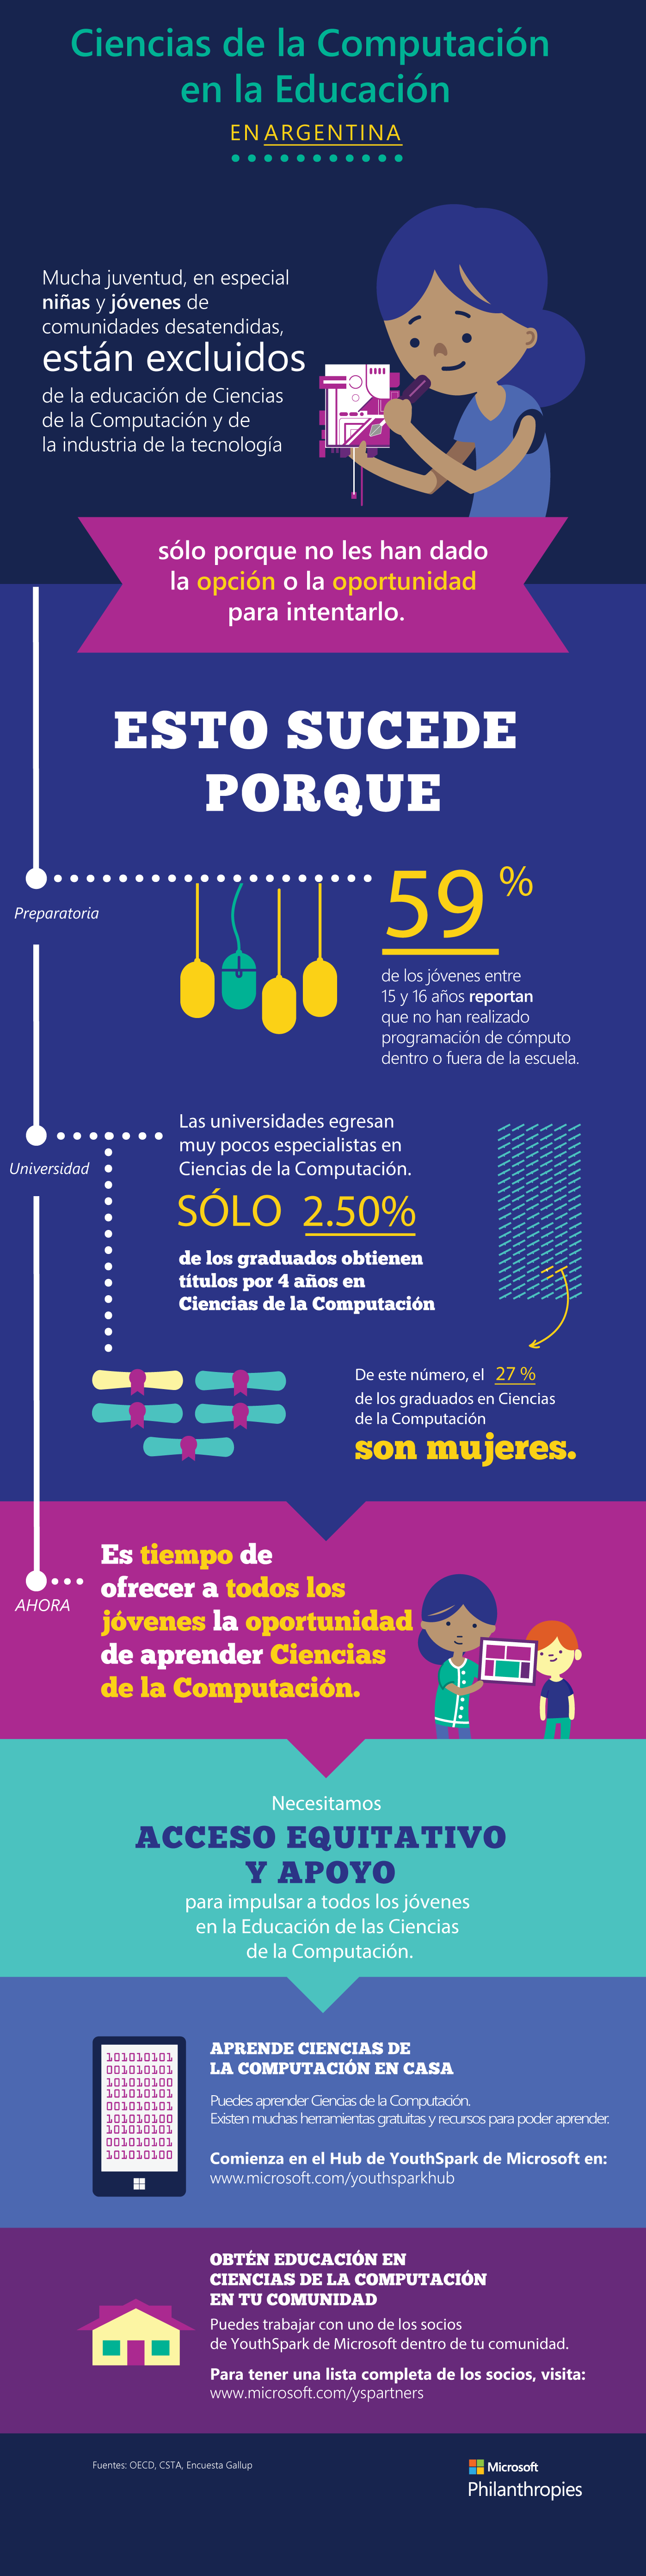 Infografia - Ciencias de la Computacion en la Educacion en Argentina